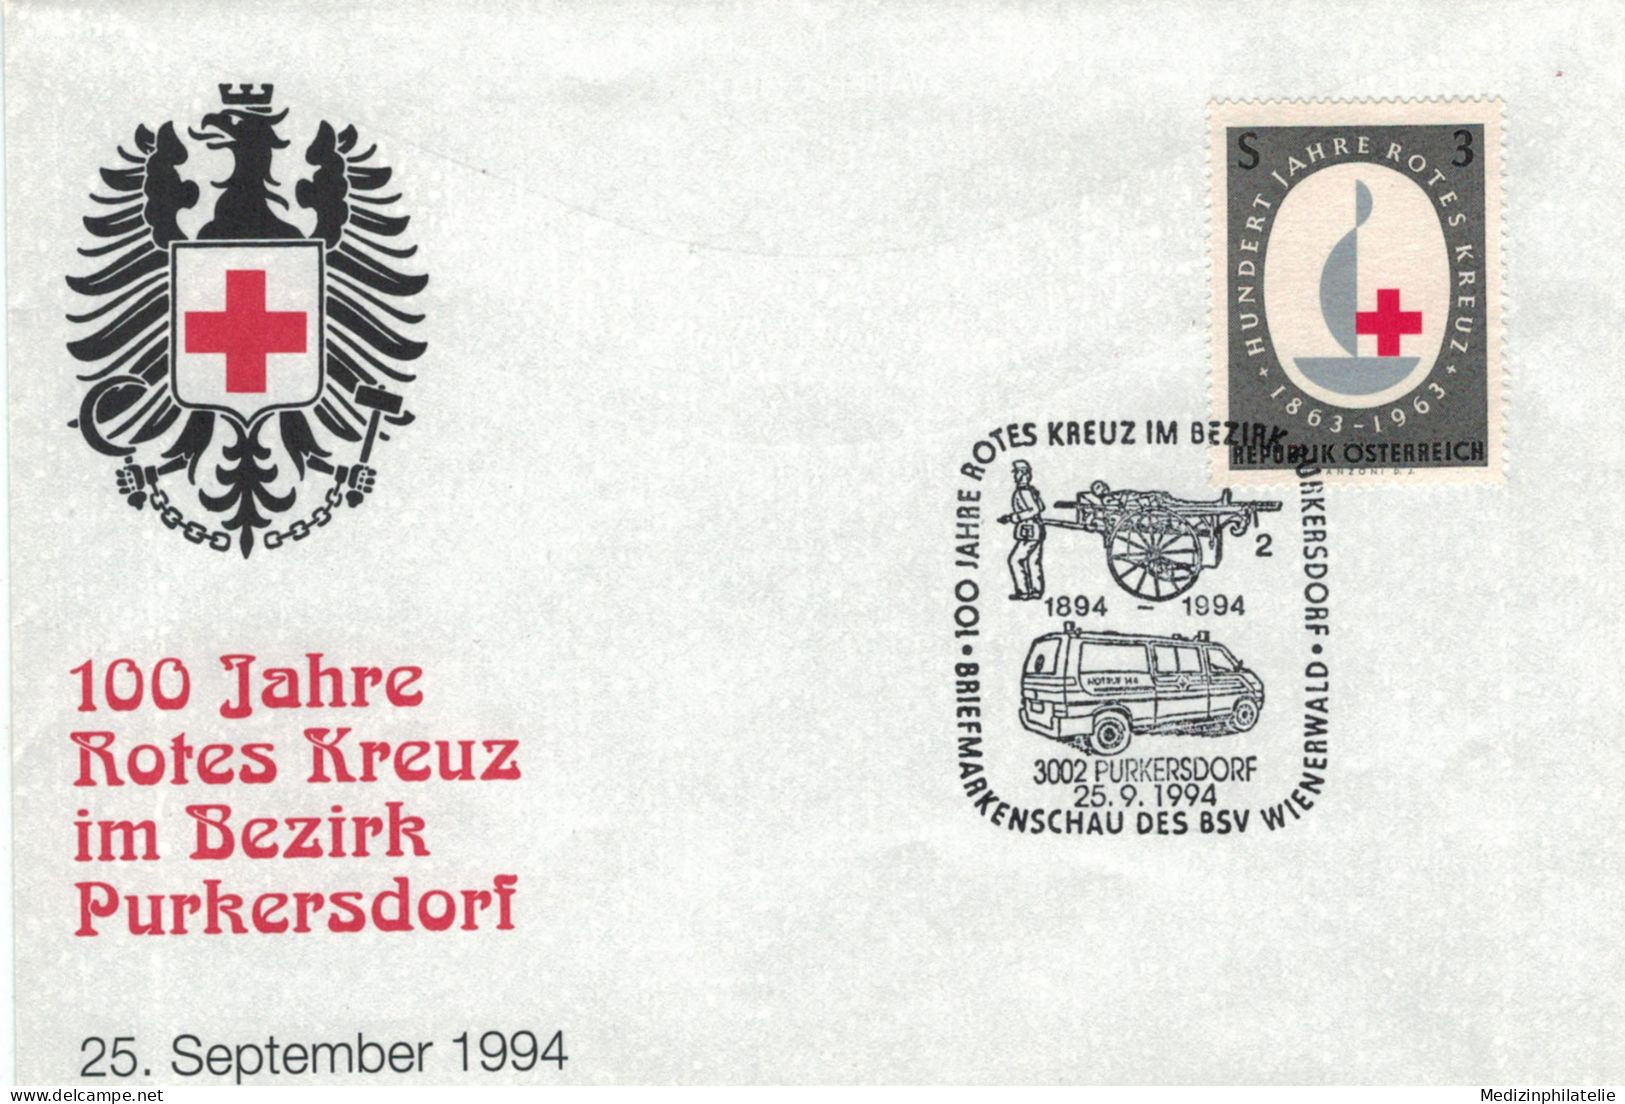 Rotes Kreuz - 3002 Purkersdorf 1994 Handkarren - First Aid